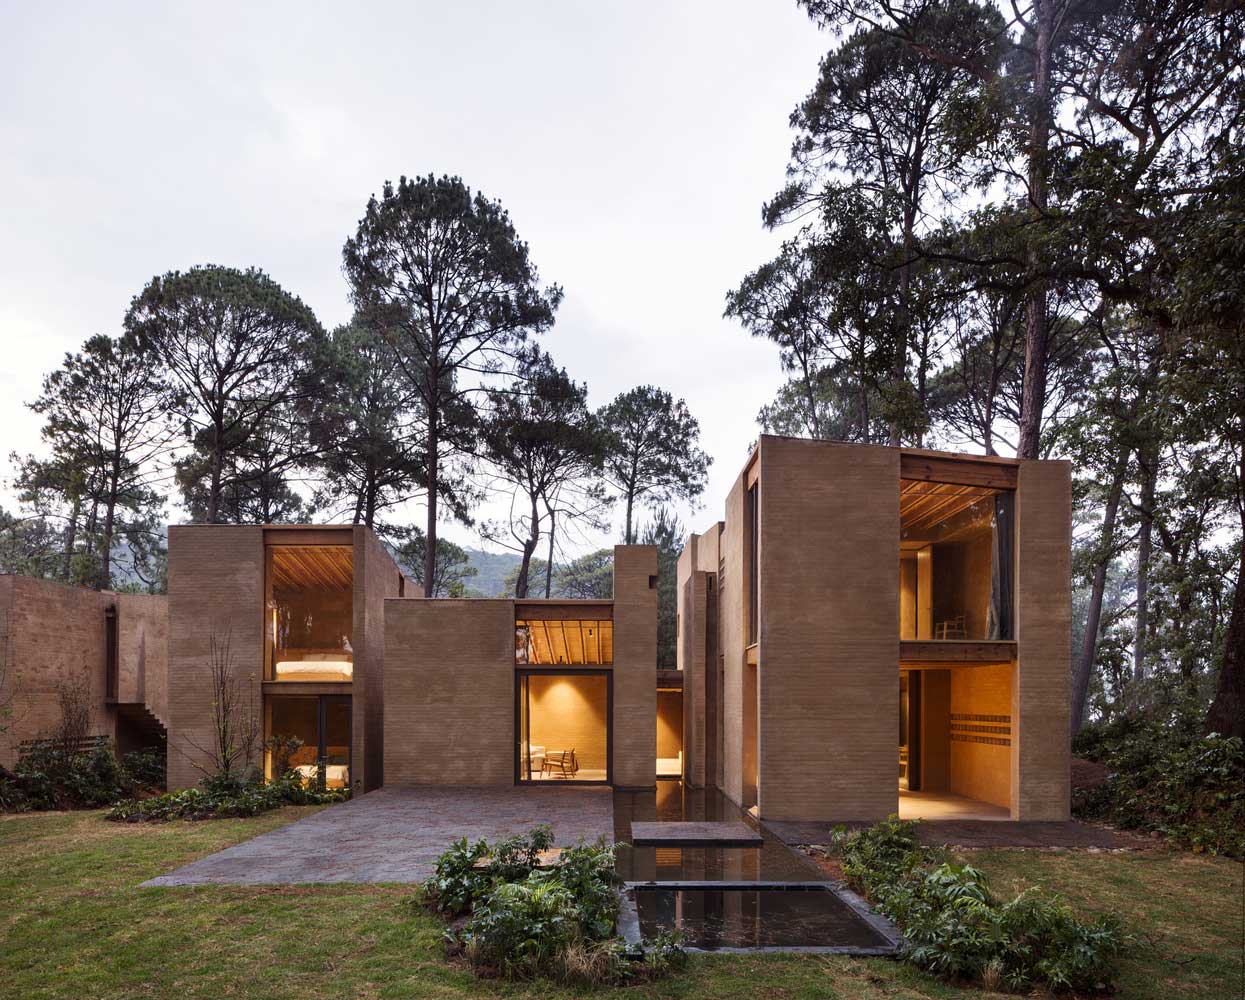 Comment intégrer une maison en brique moderne avec la nature ?